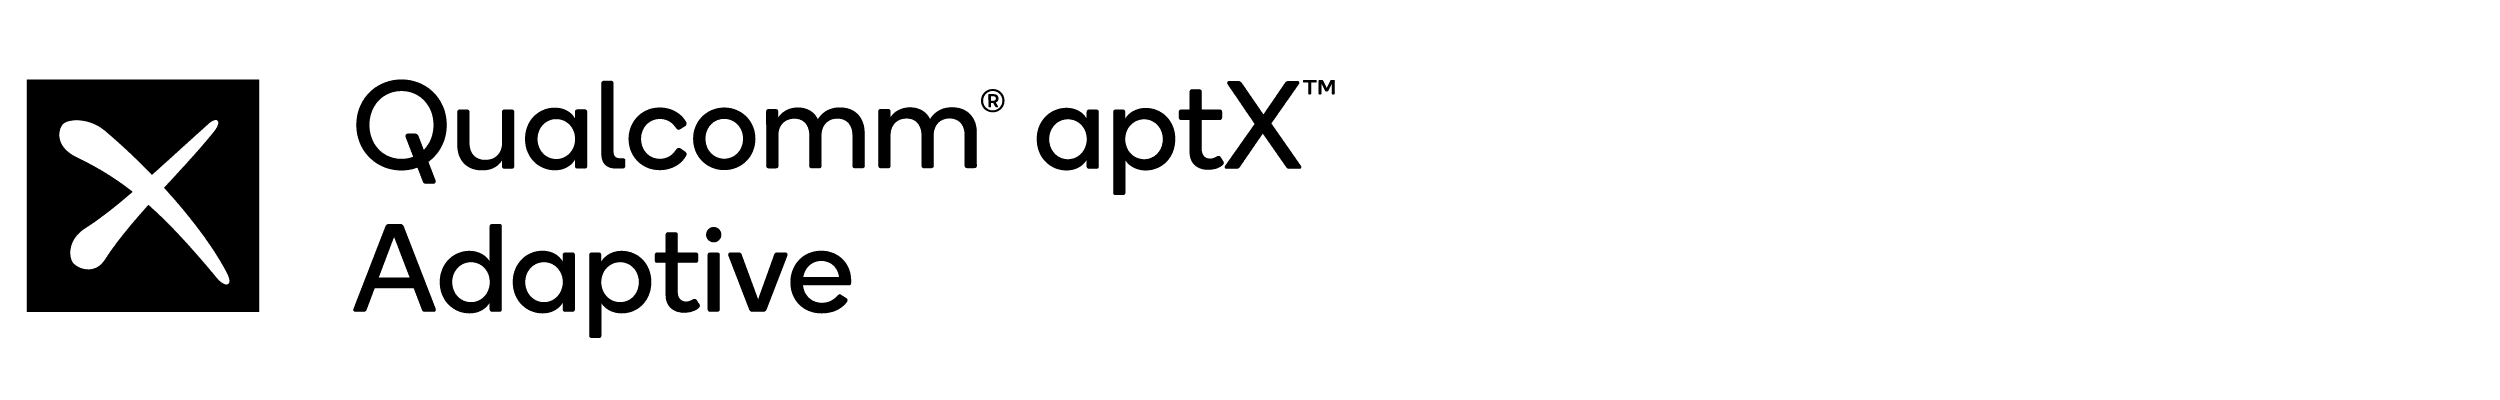 អាដាប់ទ័រ Qualcomm aptX Adaptive